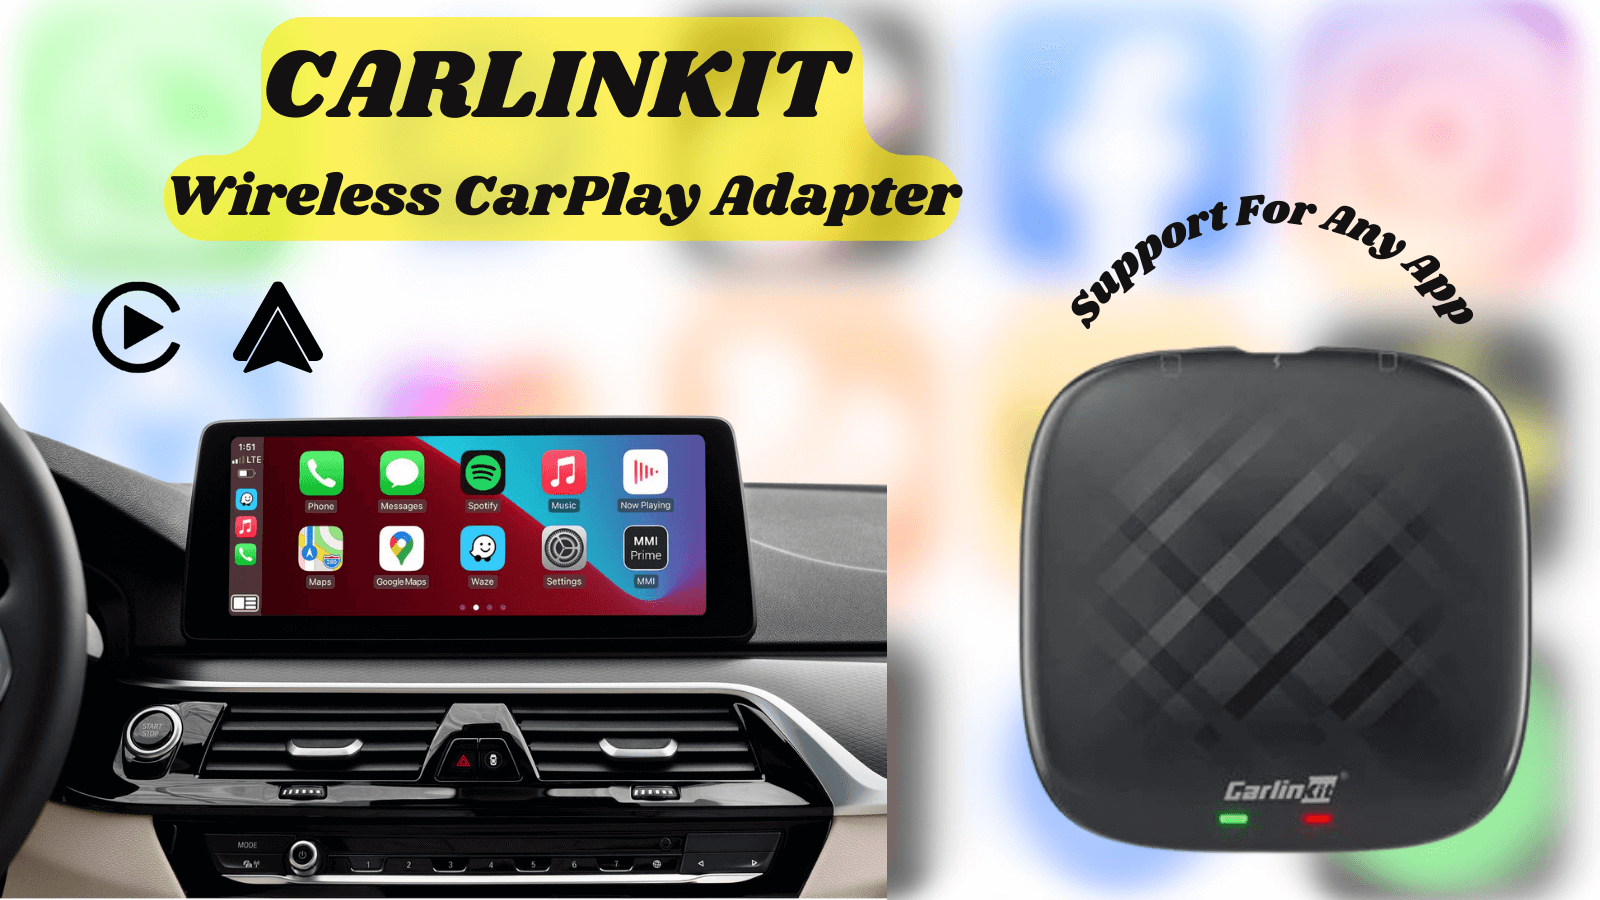 Carlinkit wireless CarPlay adapter for any app